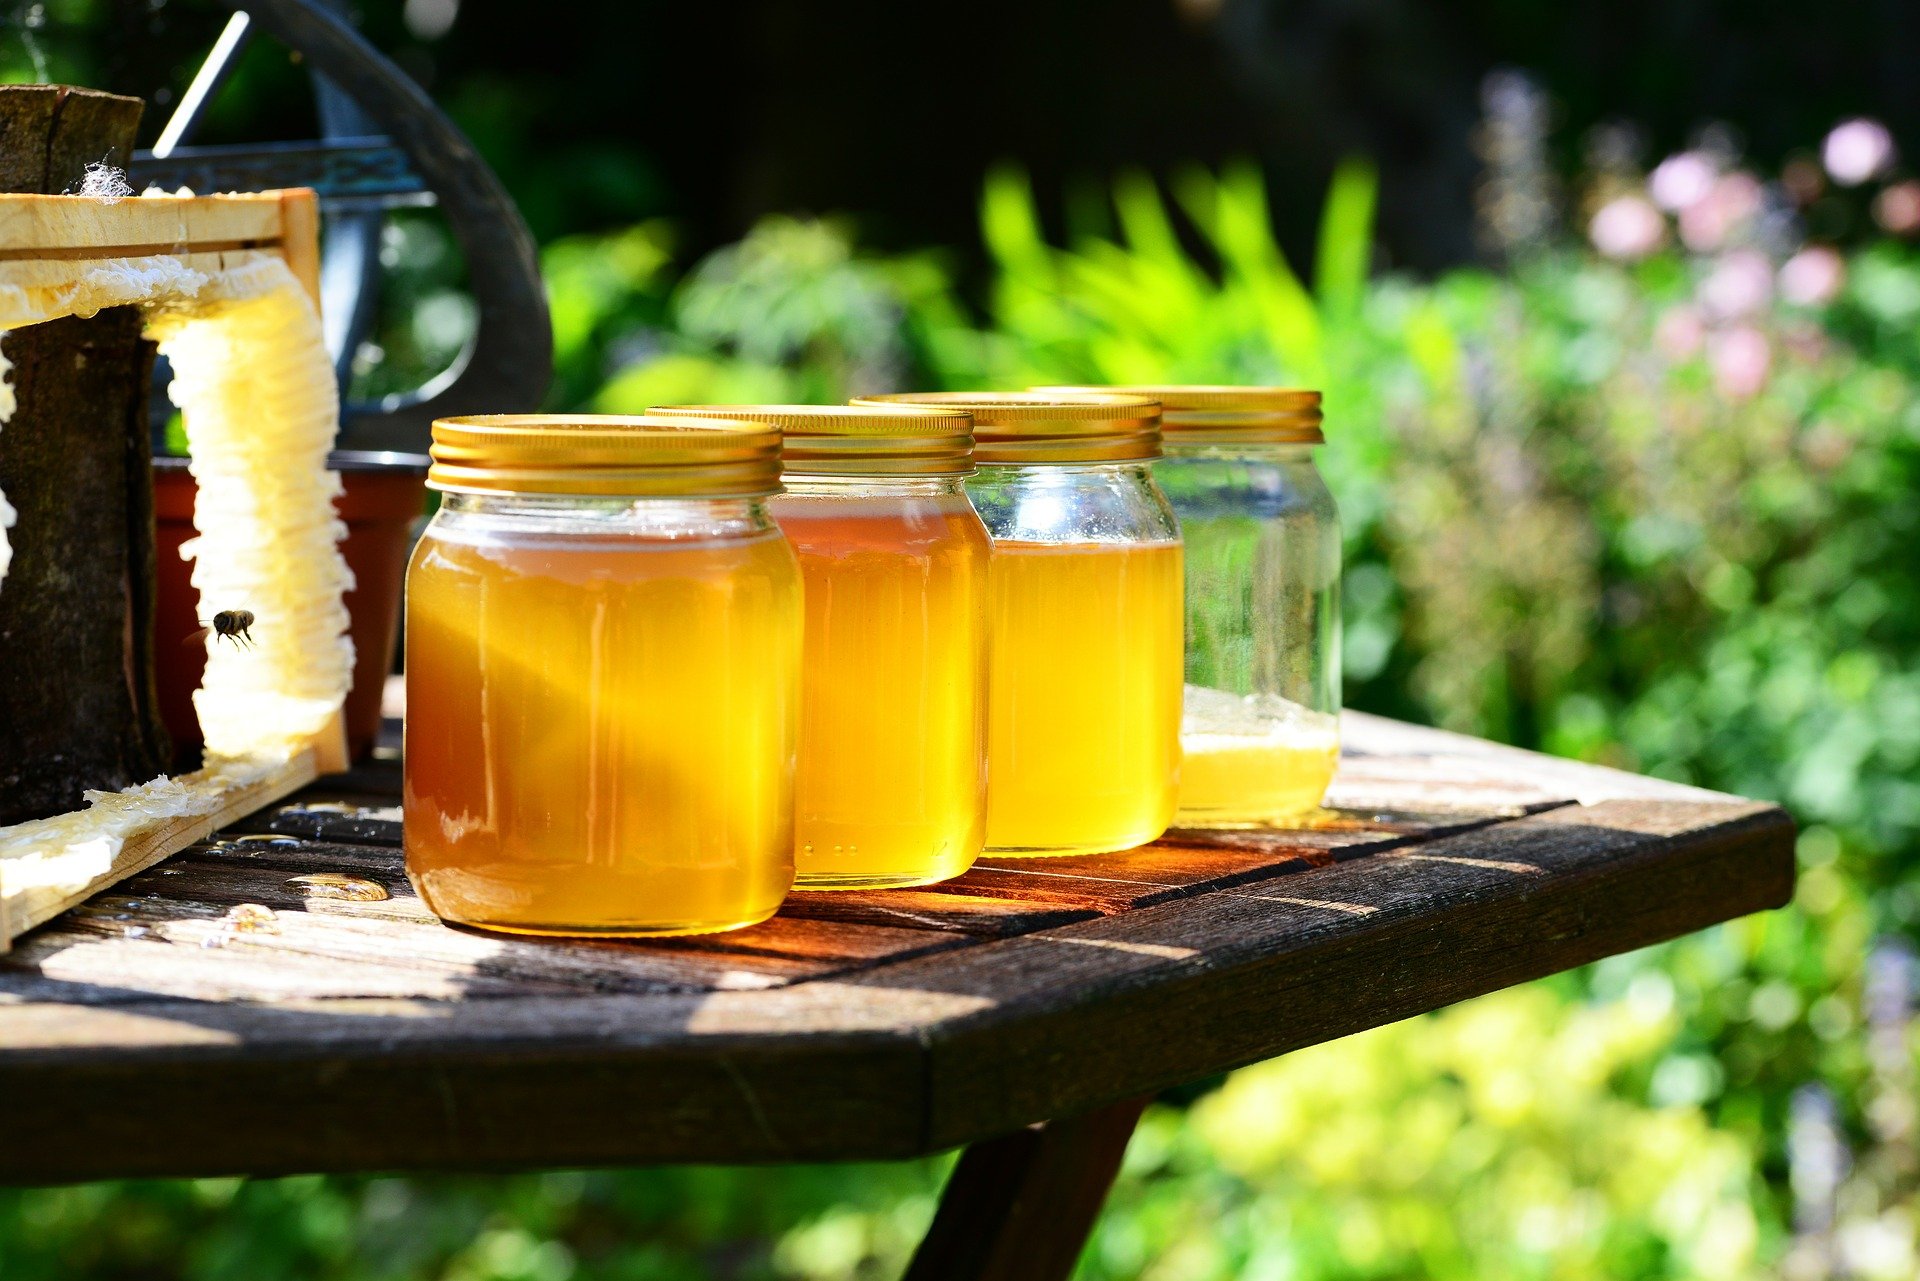 Фестиваль мёда в деревне Анучино пройдёт 28 августа